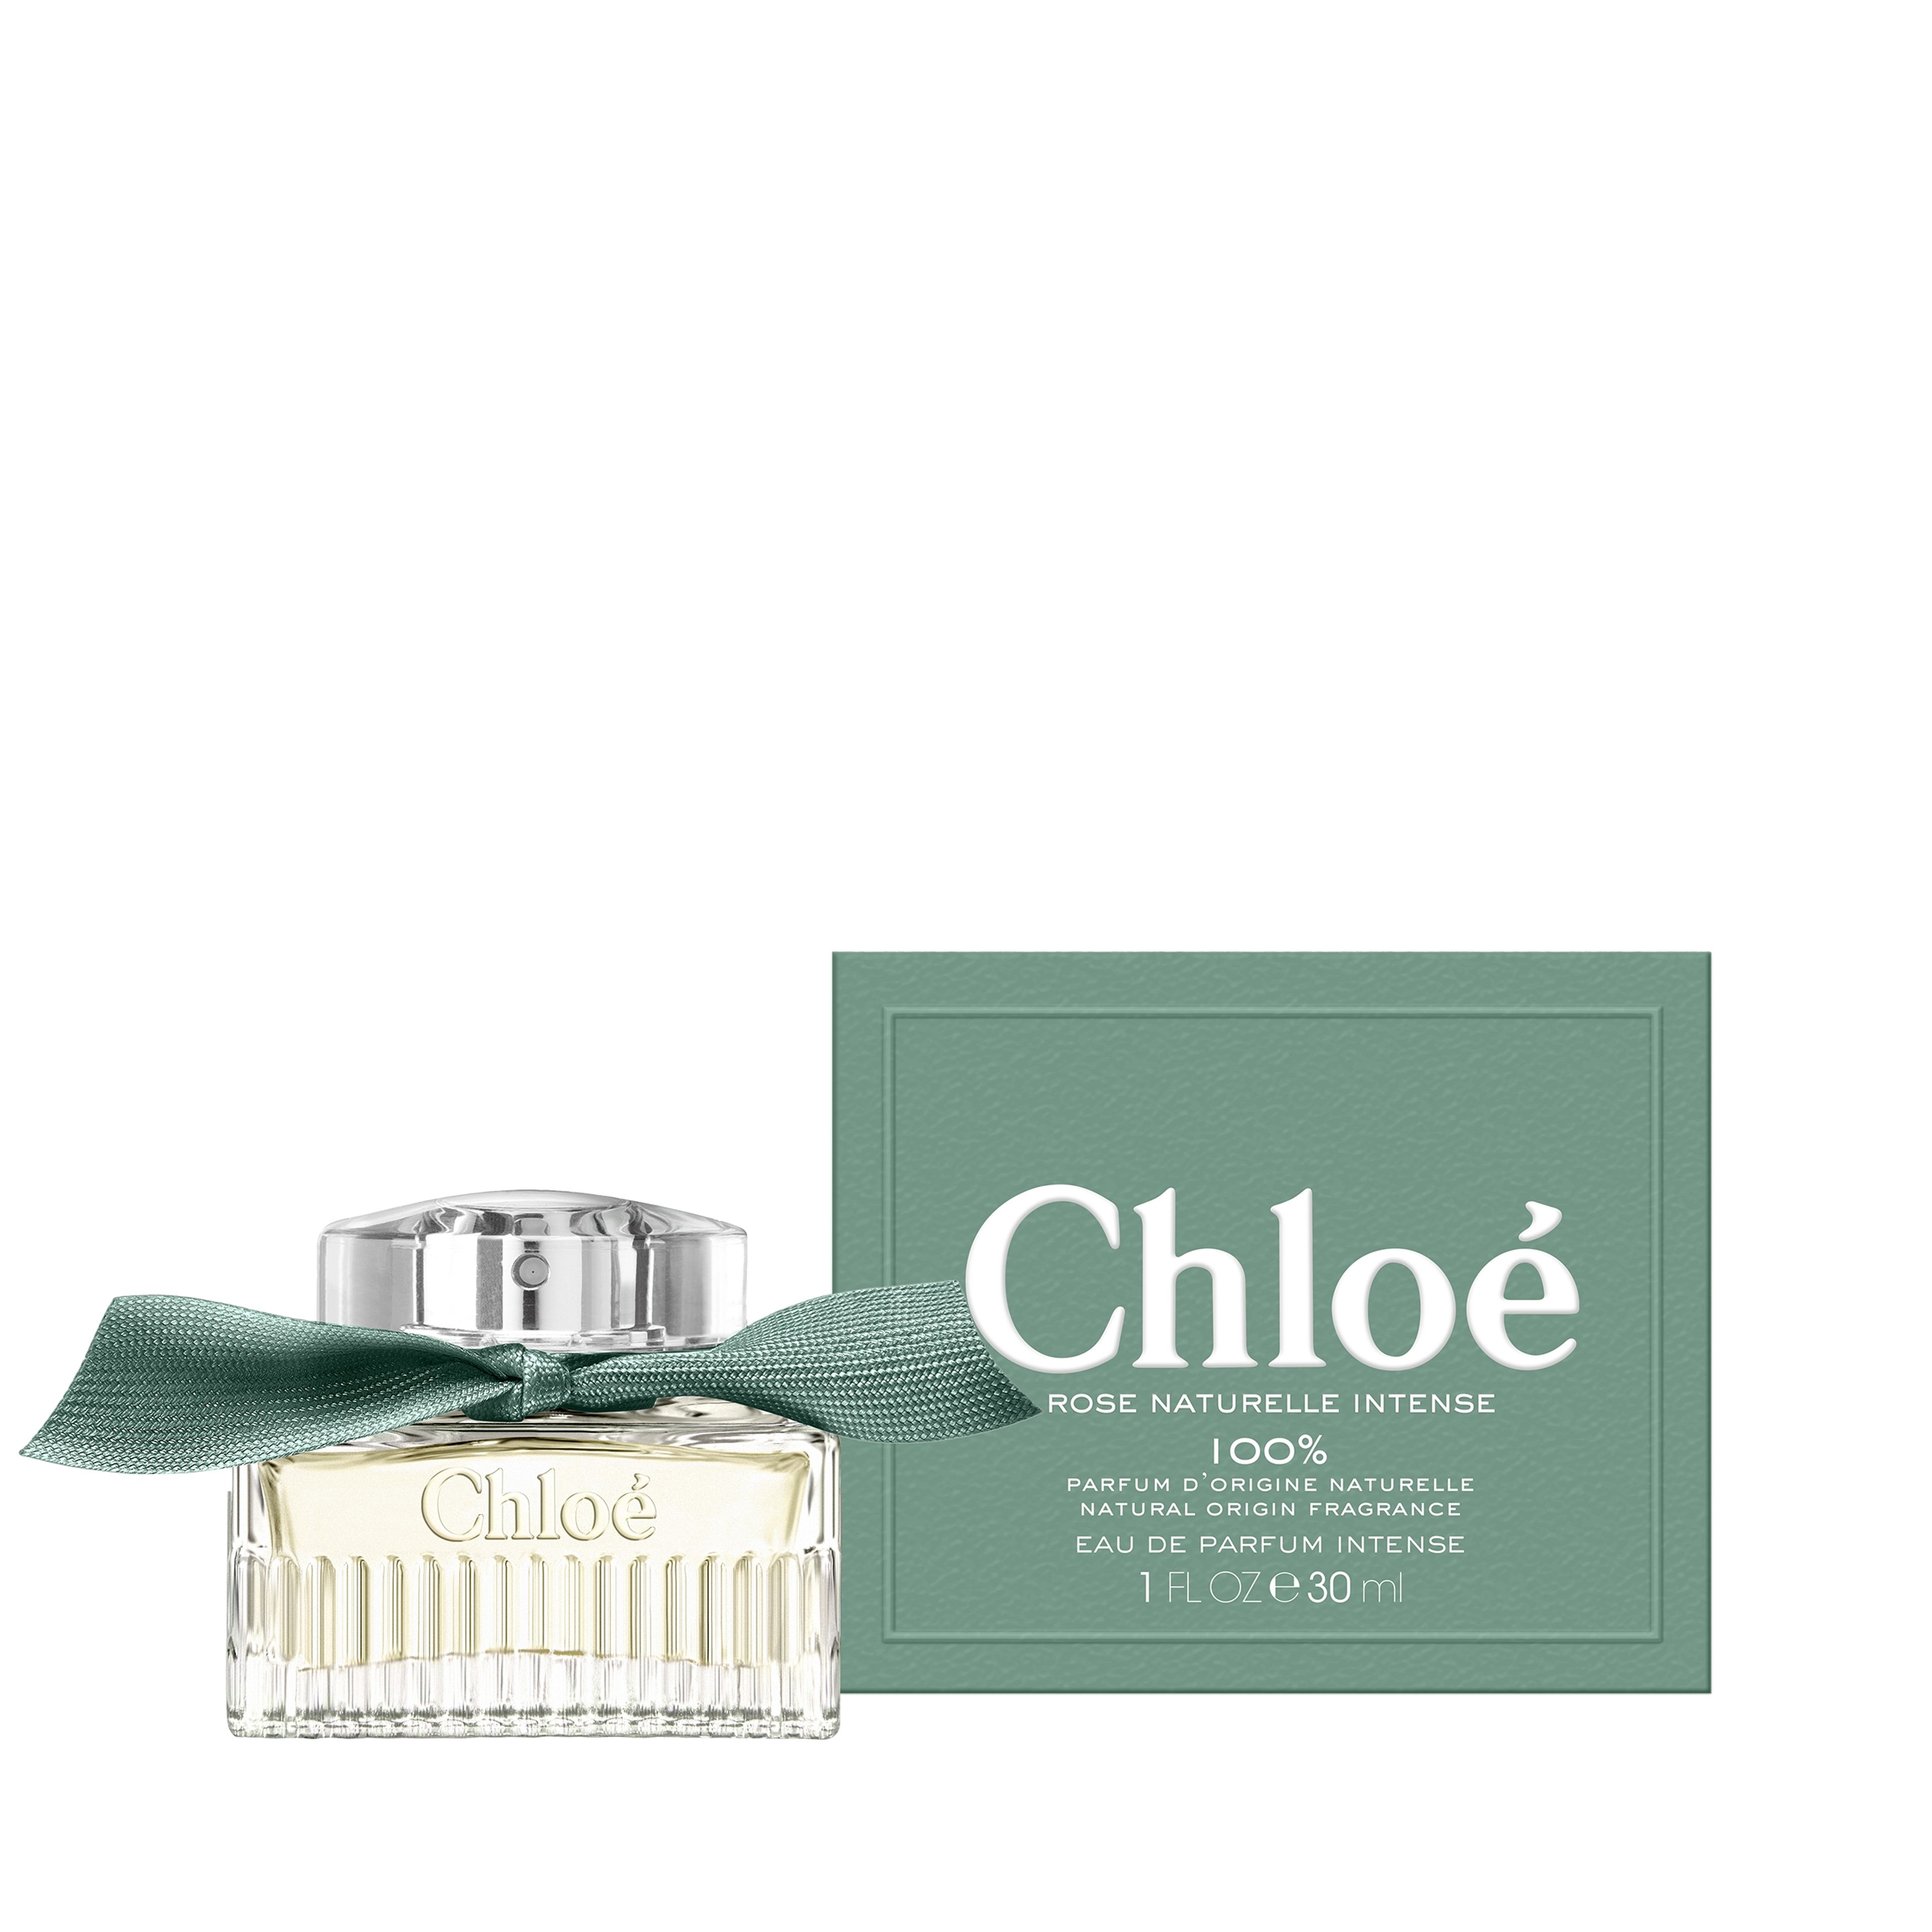 Chloé Chloé Eau De Parfum Intense Rose Naturelle Intense 3